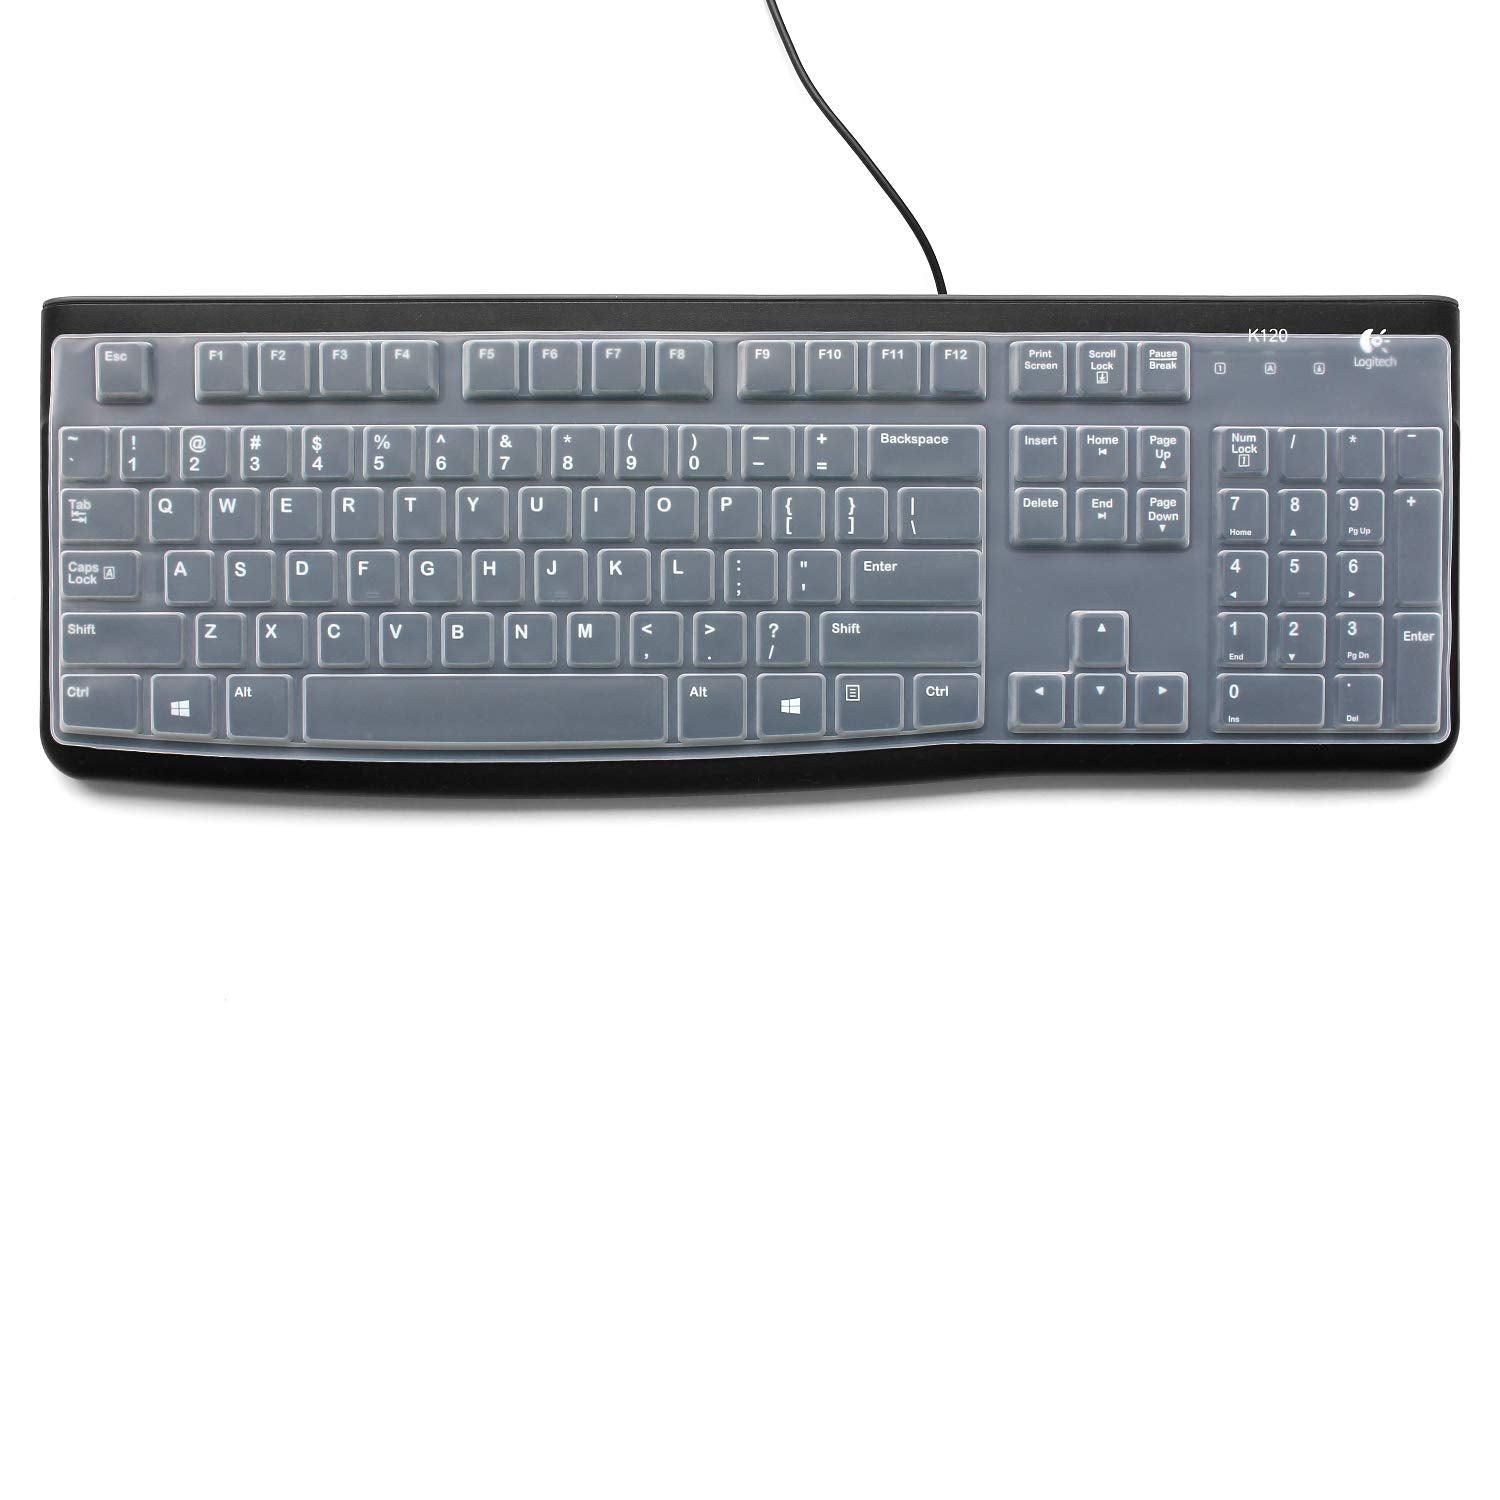 Silicone Keyboard Skin Cover for Logitech MK120 K120 Desktop Keyboard(Transparent)